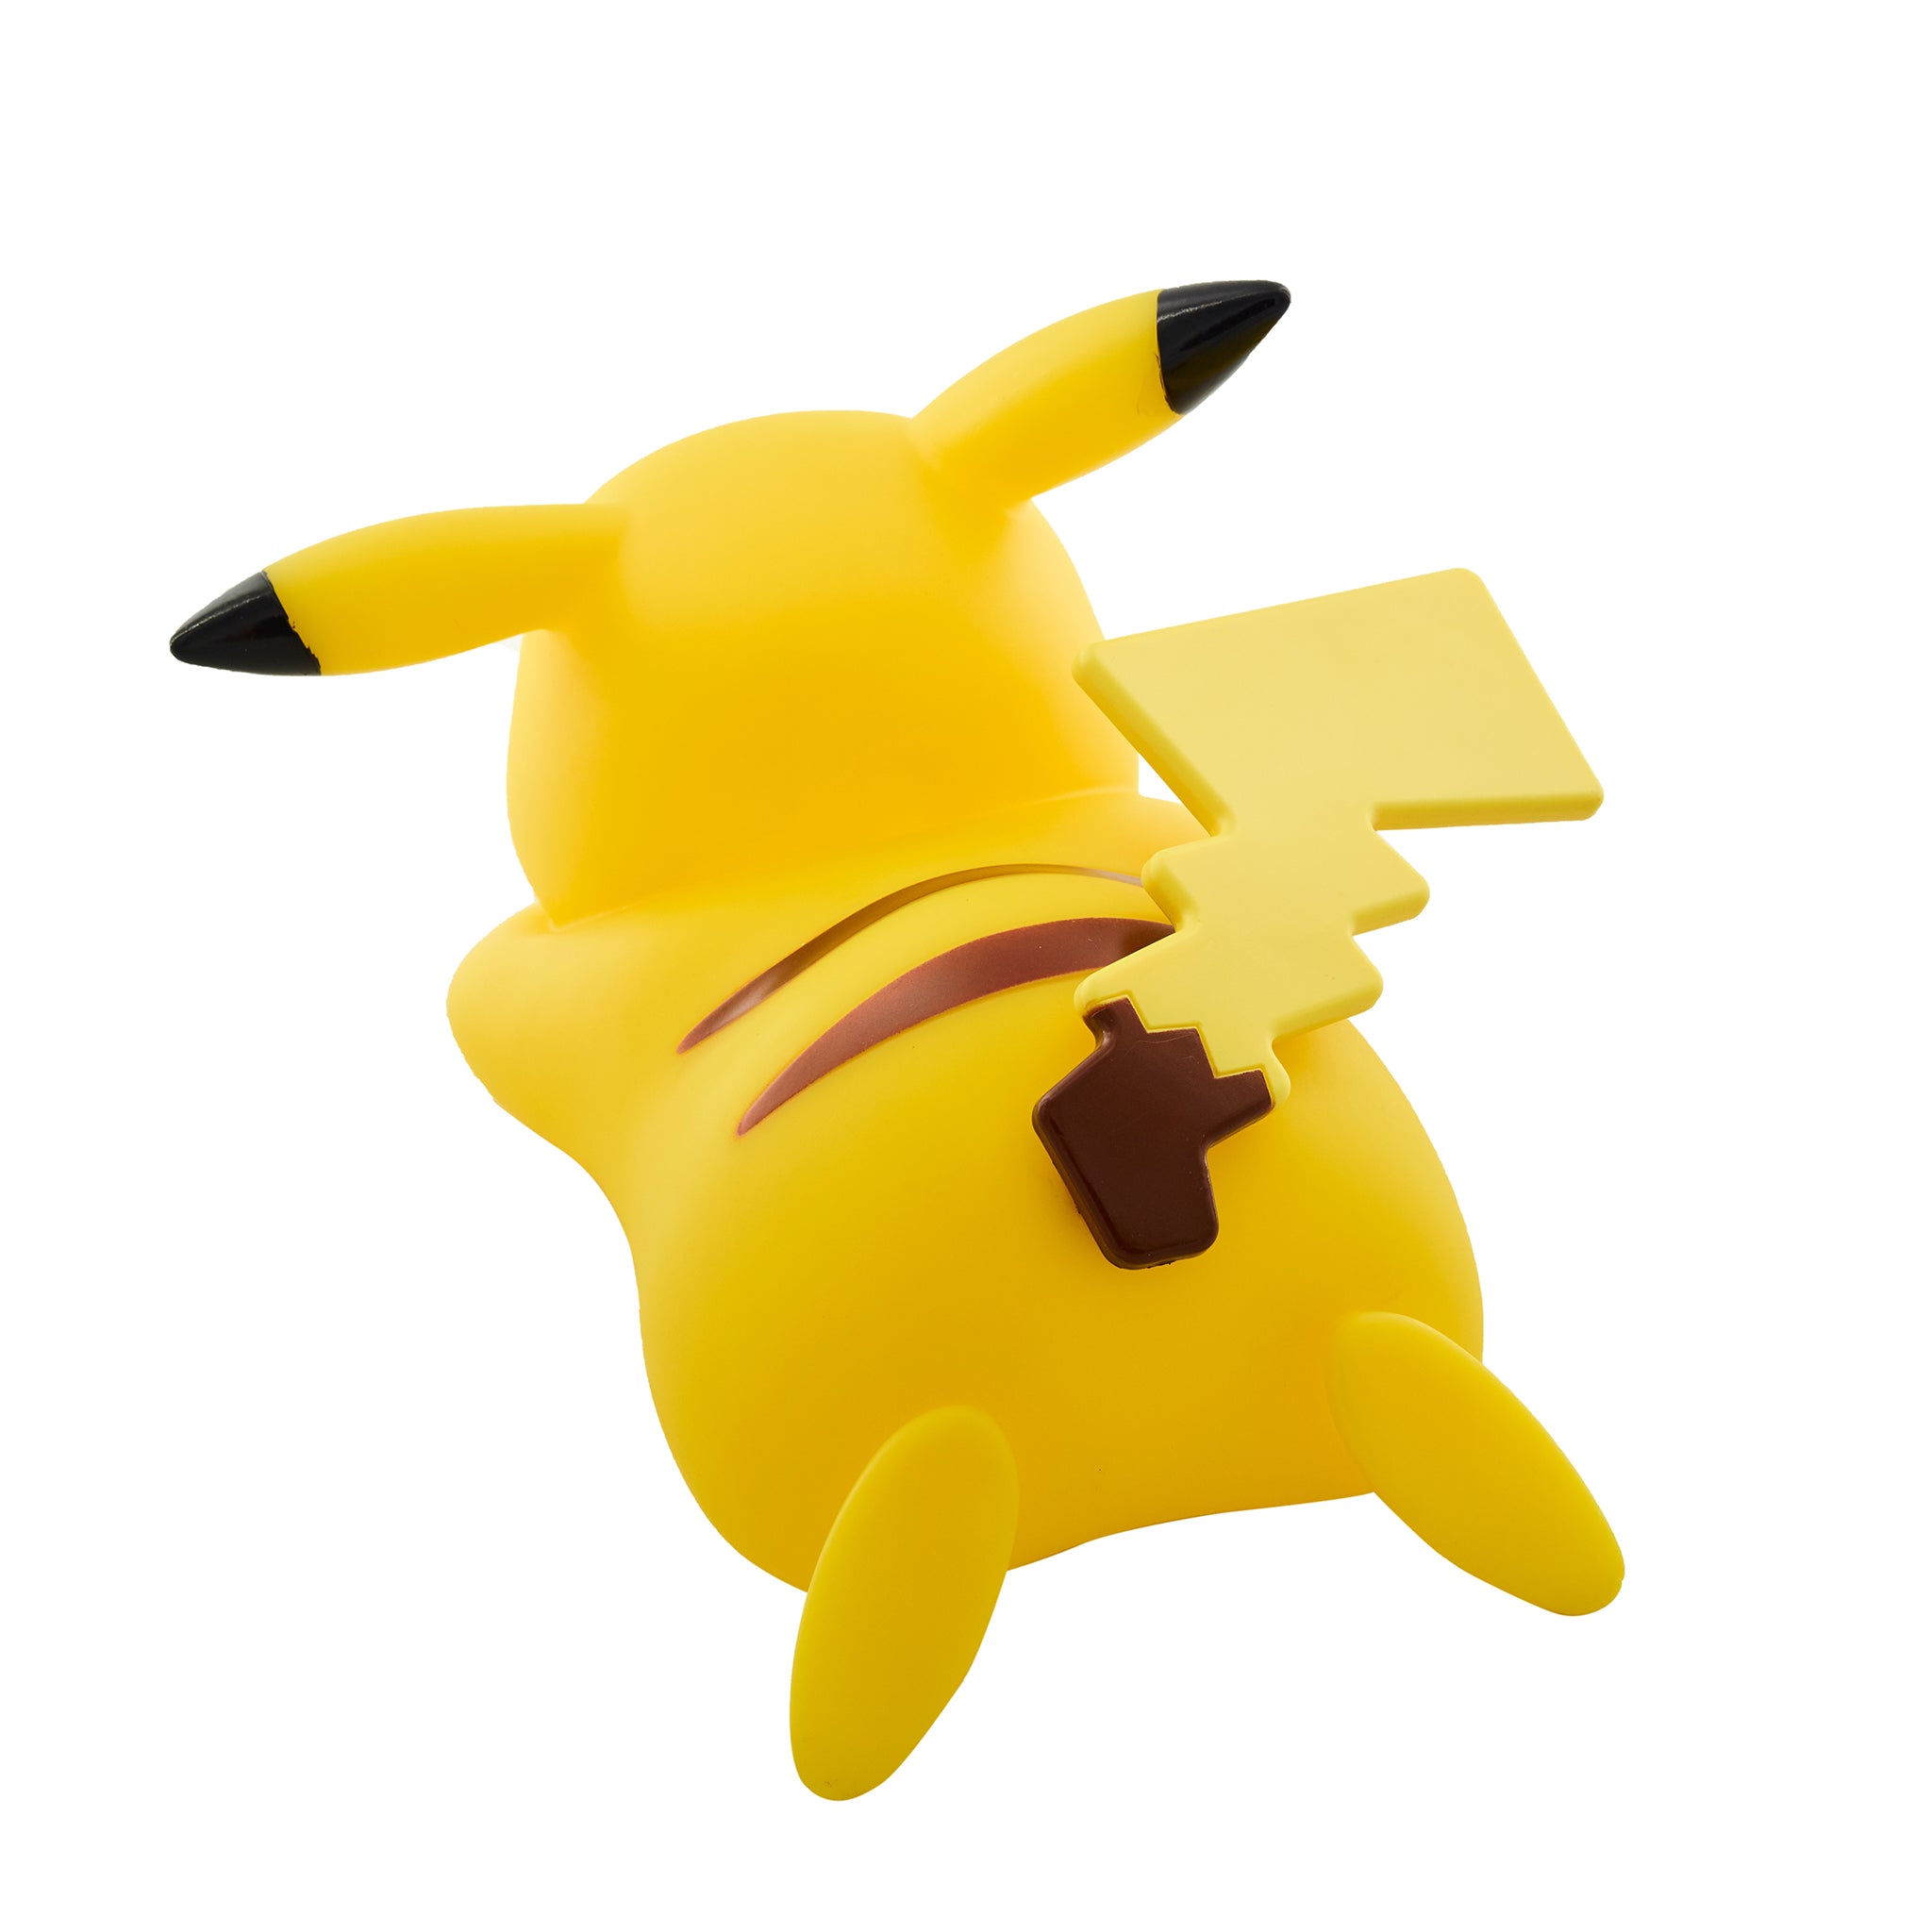 TEKNOFUN: Pokemon Pikachu 3d Lampada Led Teknofun - Vendiloshop